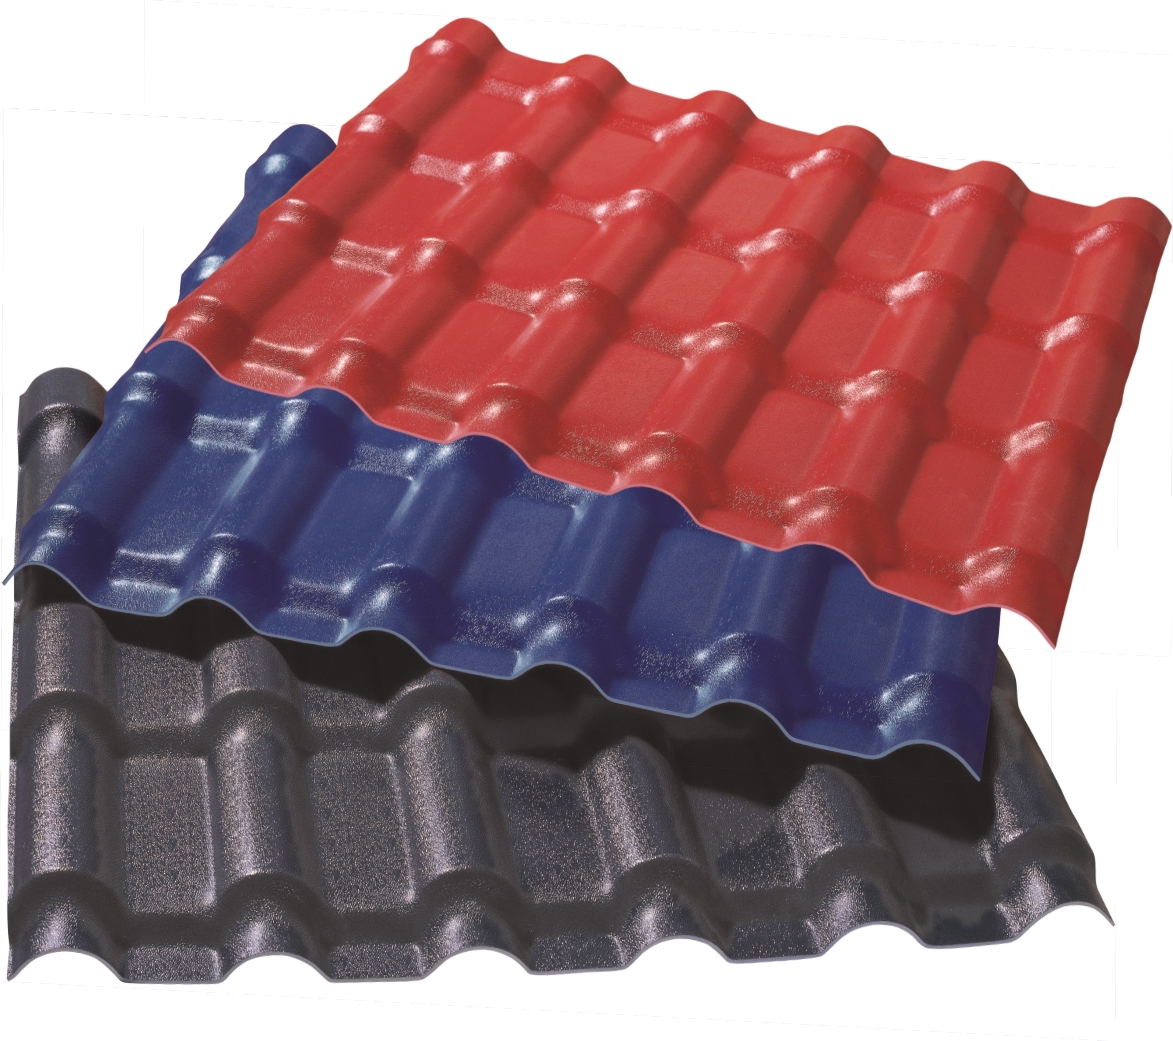 信阳PVC屋面瓦生产设备的应用与维护保养